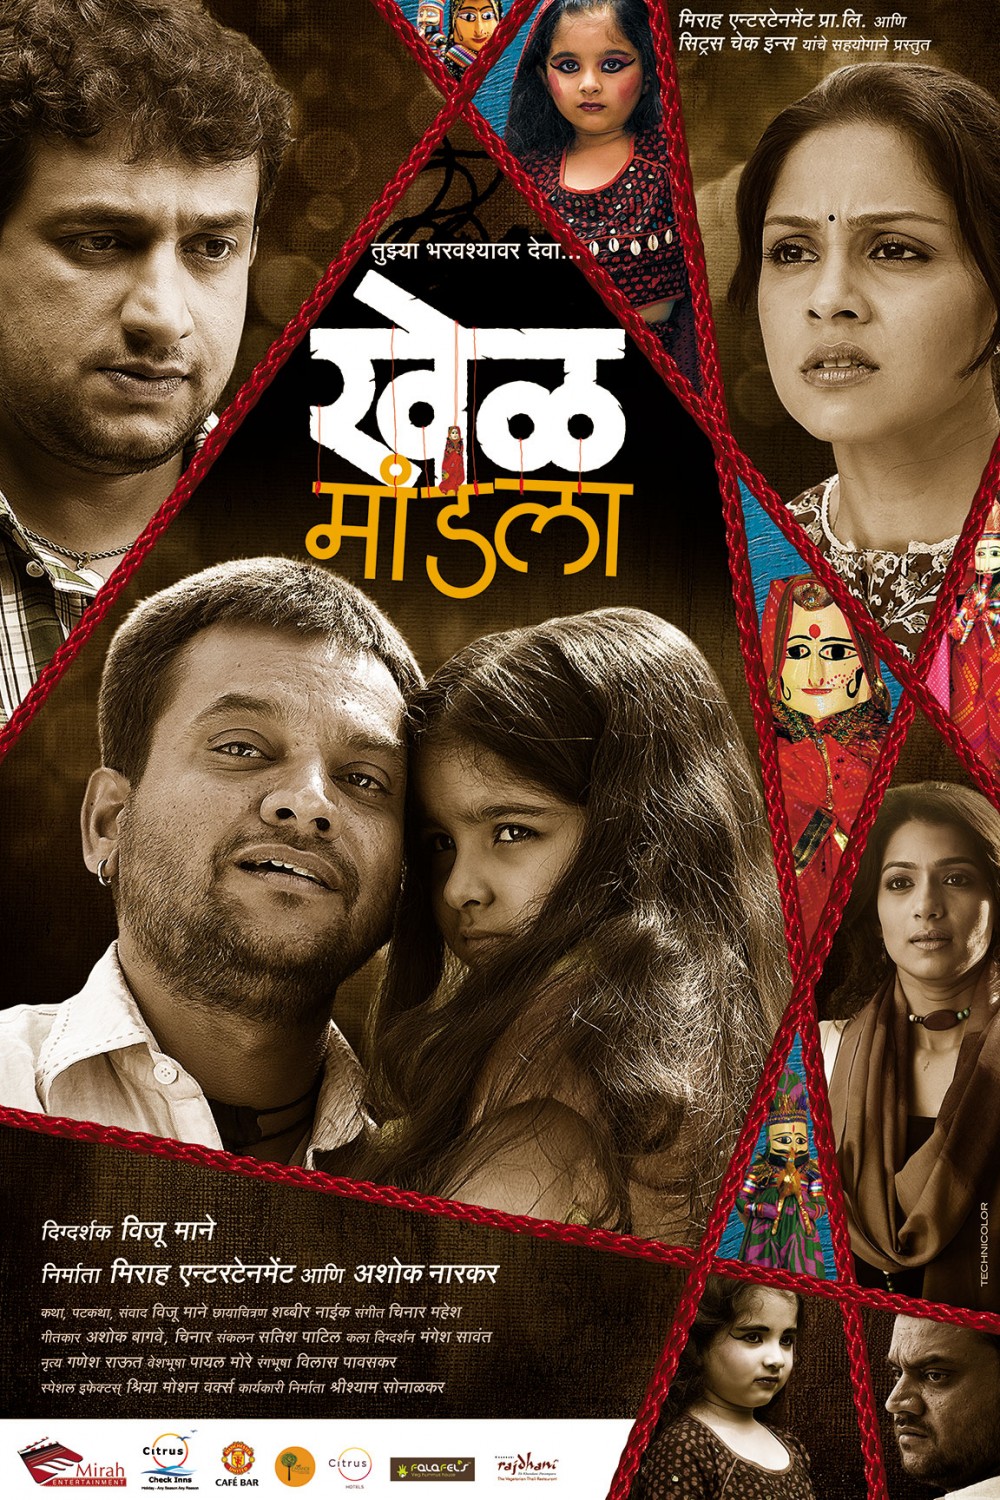 Extra Large Movie Poster Image for Khel Mandala (#12 of 13)